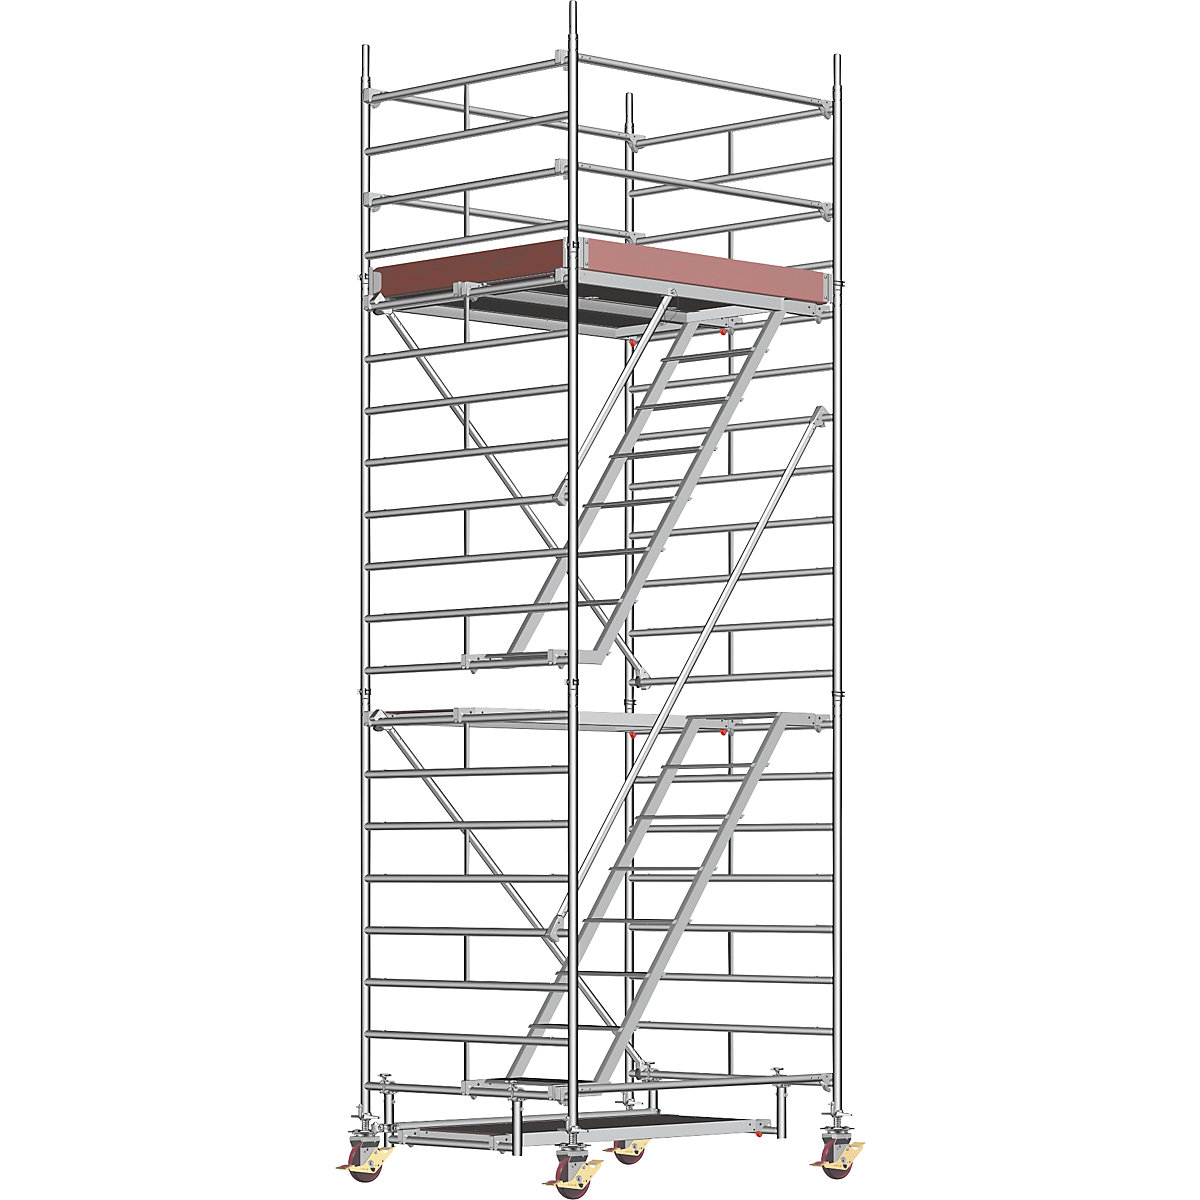 Universele rolsteiger – Layher, met ladder, platform 1,80 x 1,50 m, steigerhoogte 5,43 m, vanaf 2 stuks-4